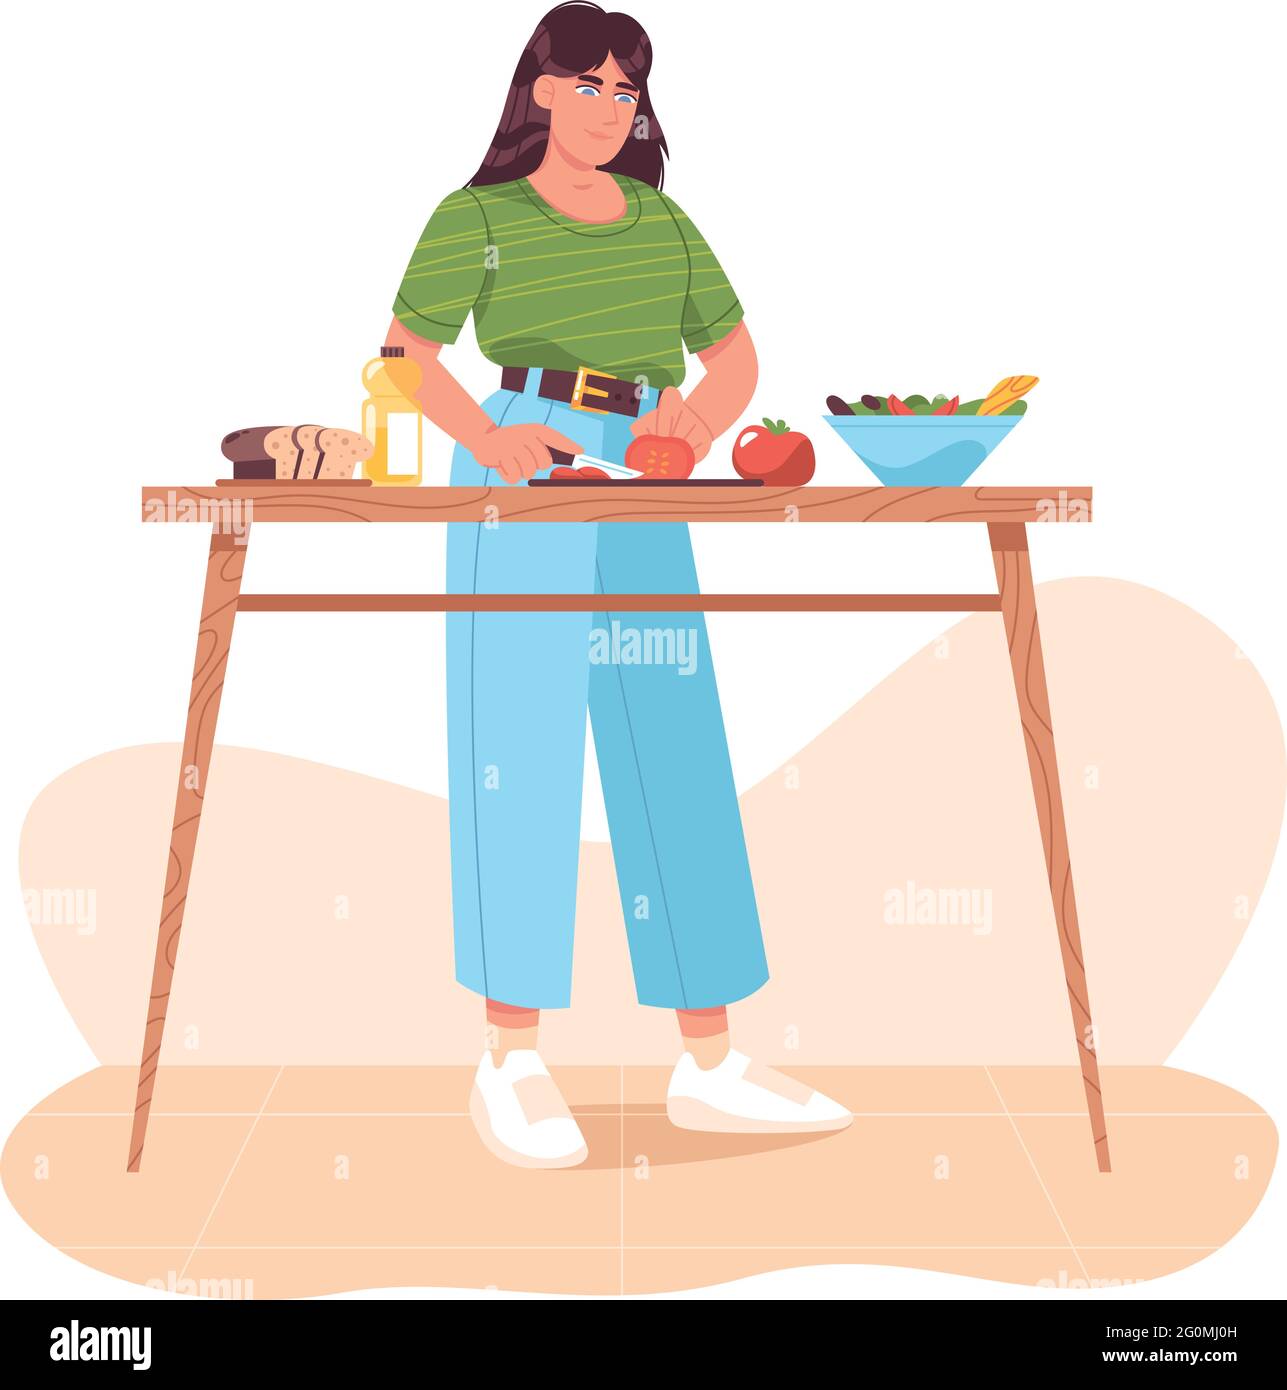 Femme préparant des aliments sains, coupant des légumes frais. Repas faits maison sur la table de cuisine à la maison. Salade de légumes, tomates en tranches. Cuisine végétarienne. Illustration vectorielle plate. Illustration de Vecteur